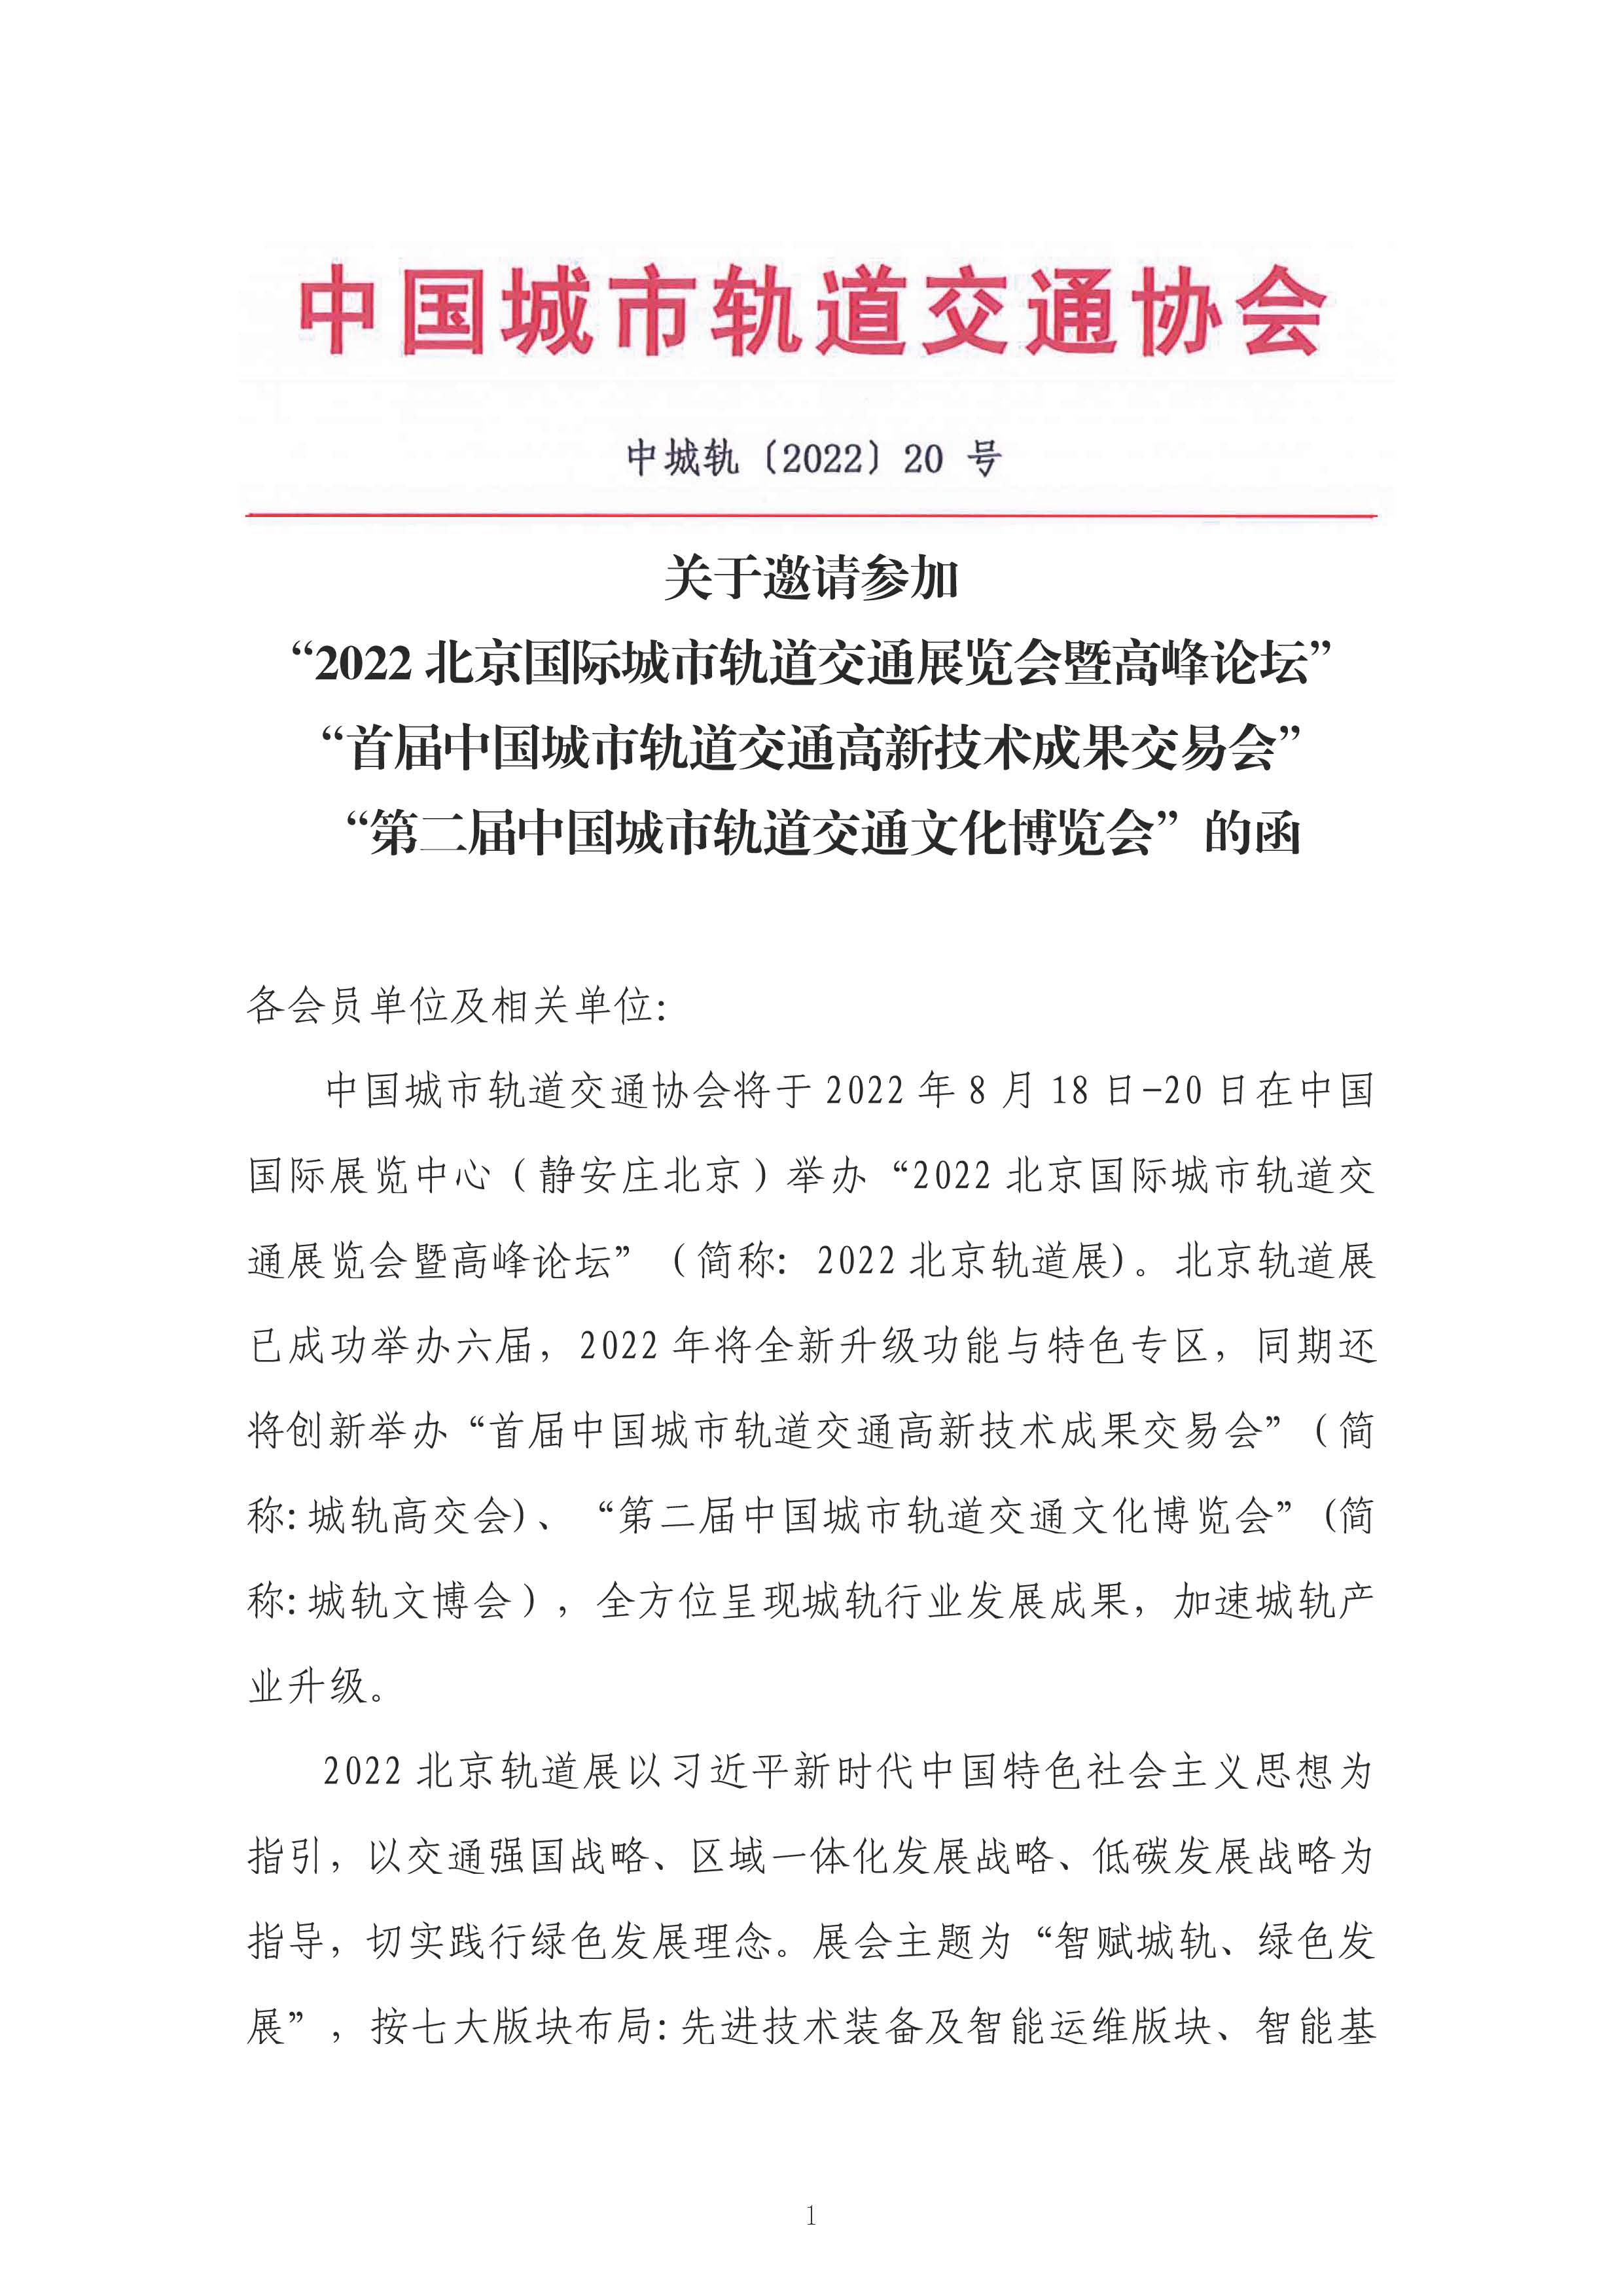 2022北京国际城市轨道交通展览会邀请函_页面_1.jpg